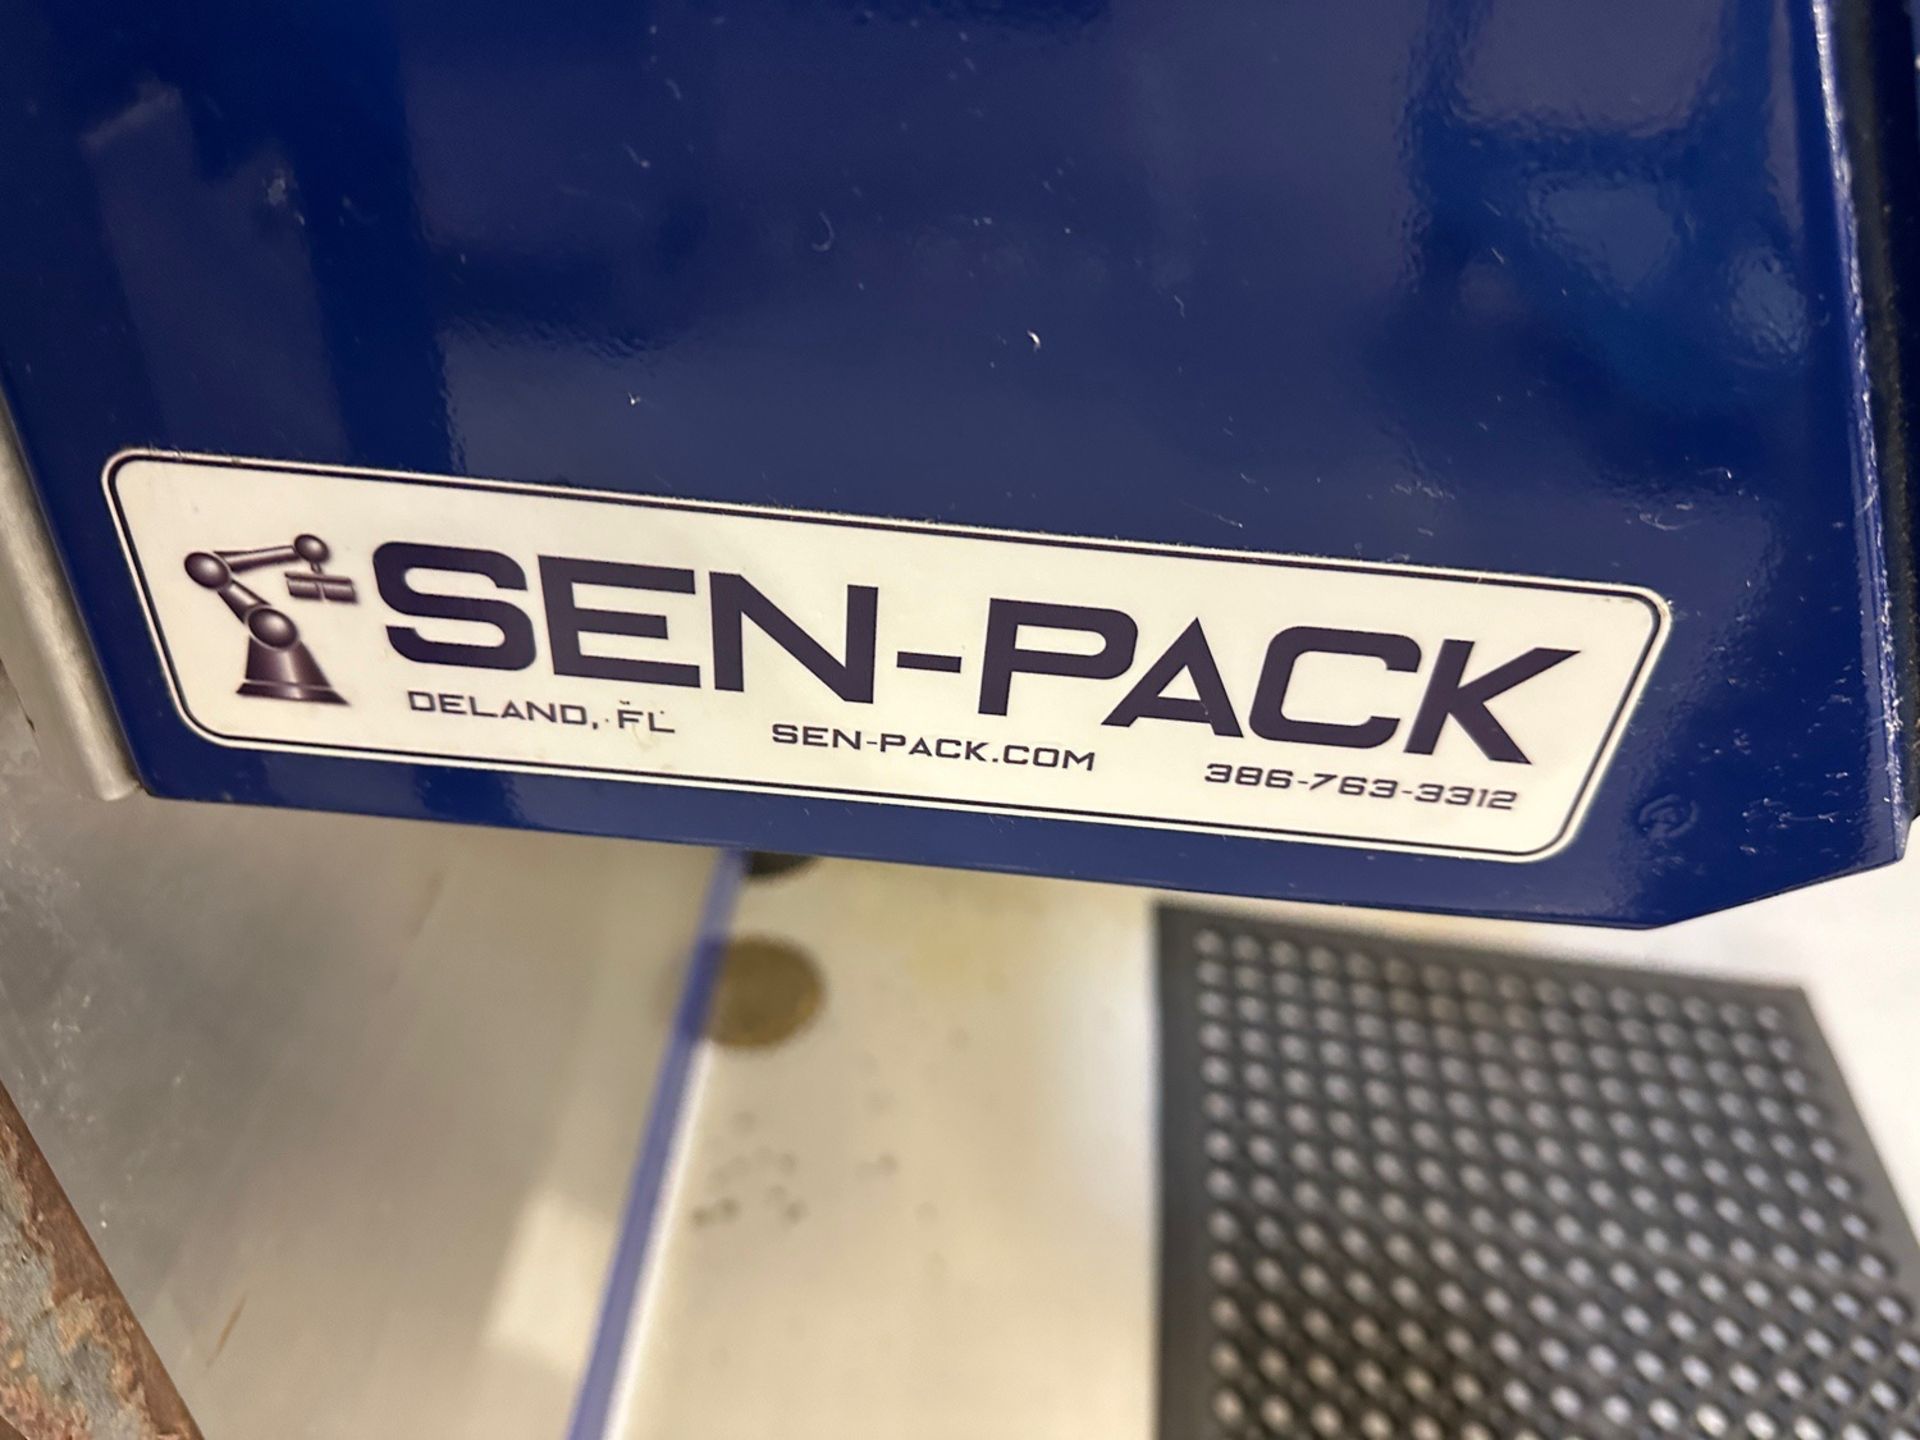 Sen-Pack Model WA-30 Case Packer, 480V/3ph/60Hz, S/O: C24533 | Rig Fee $3995 - Image 8 of 11